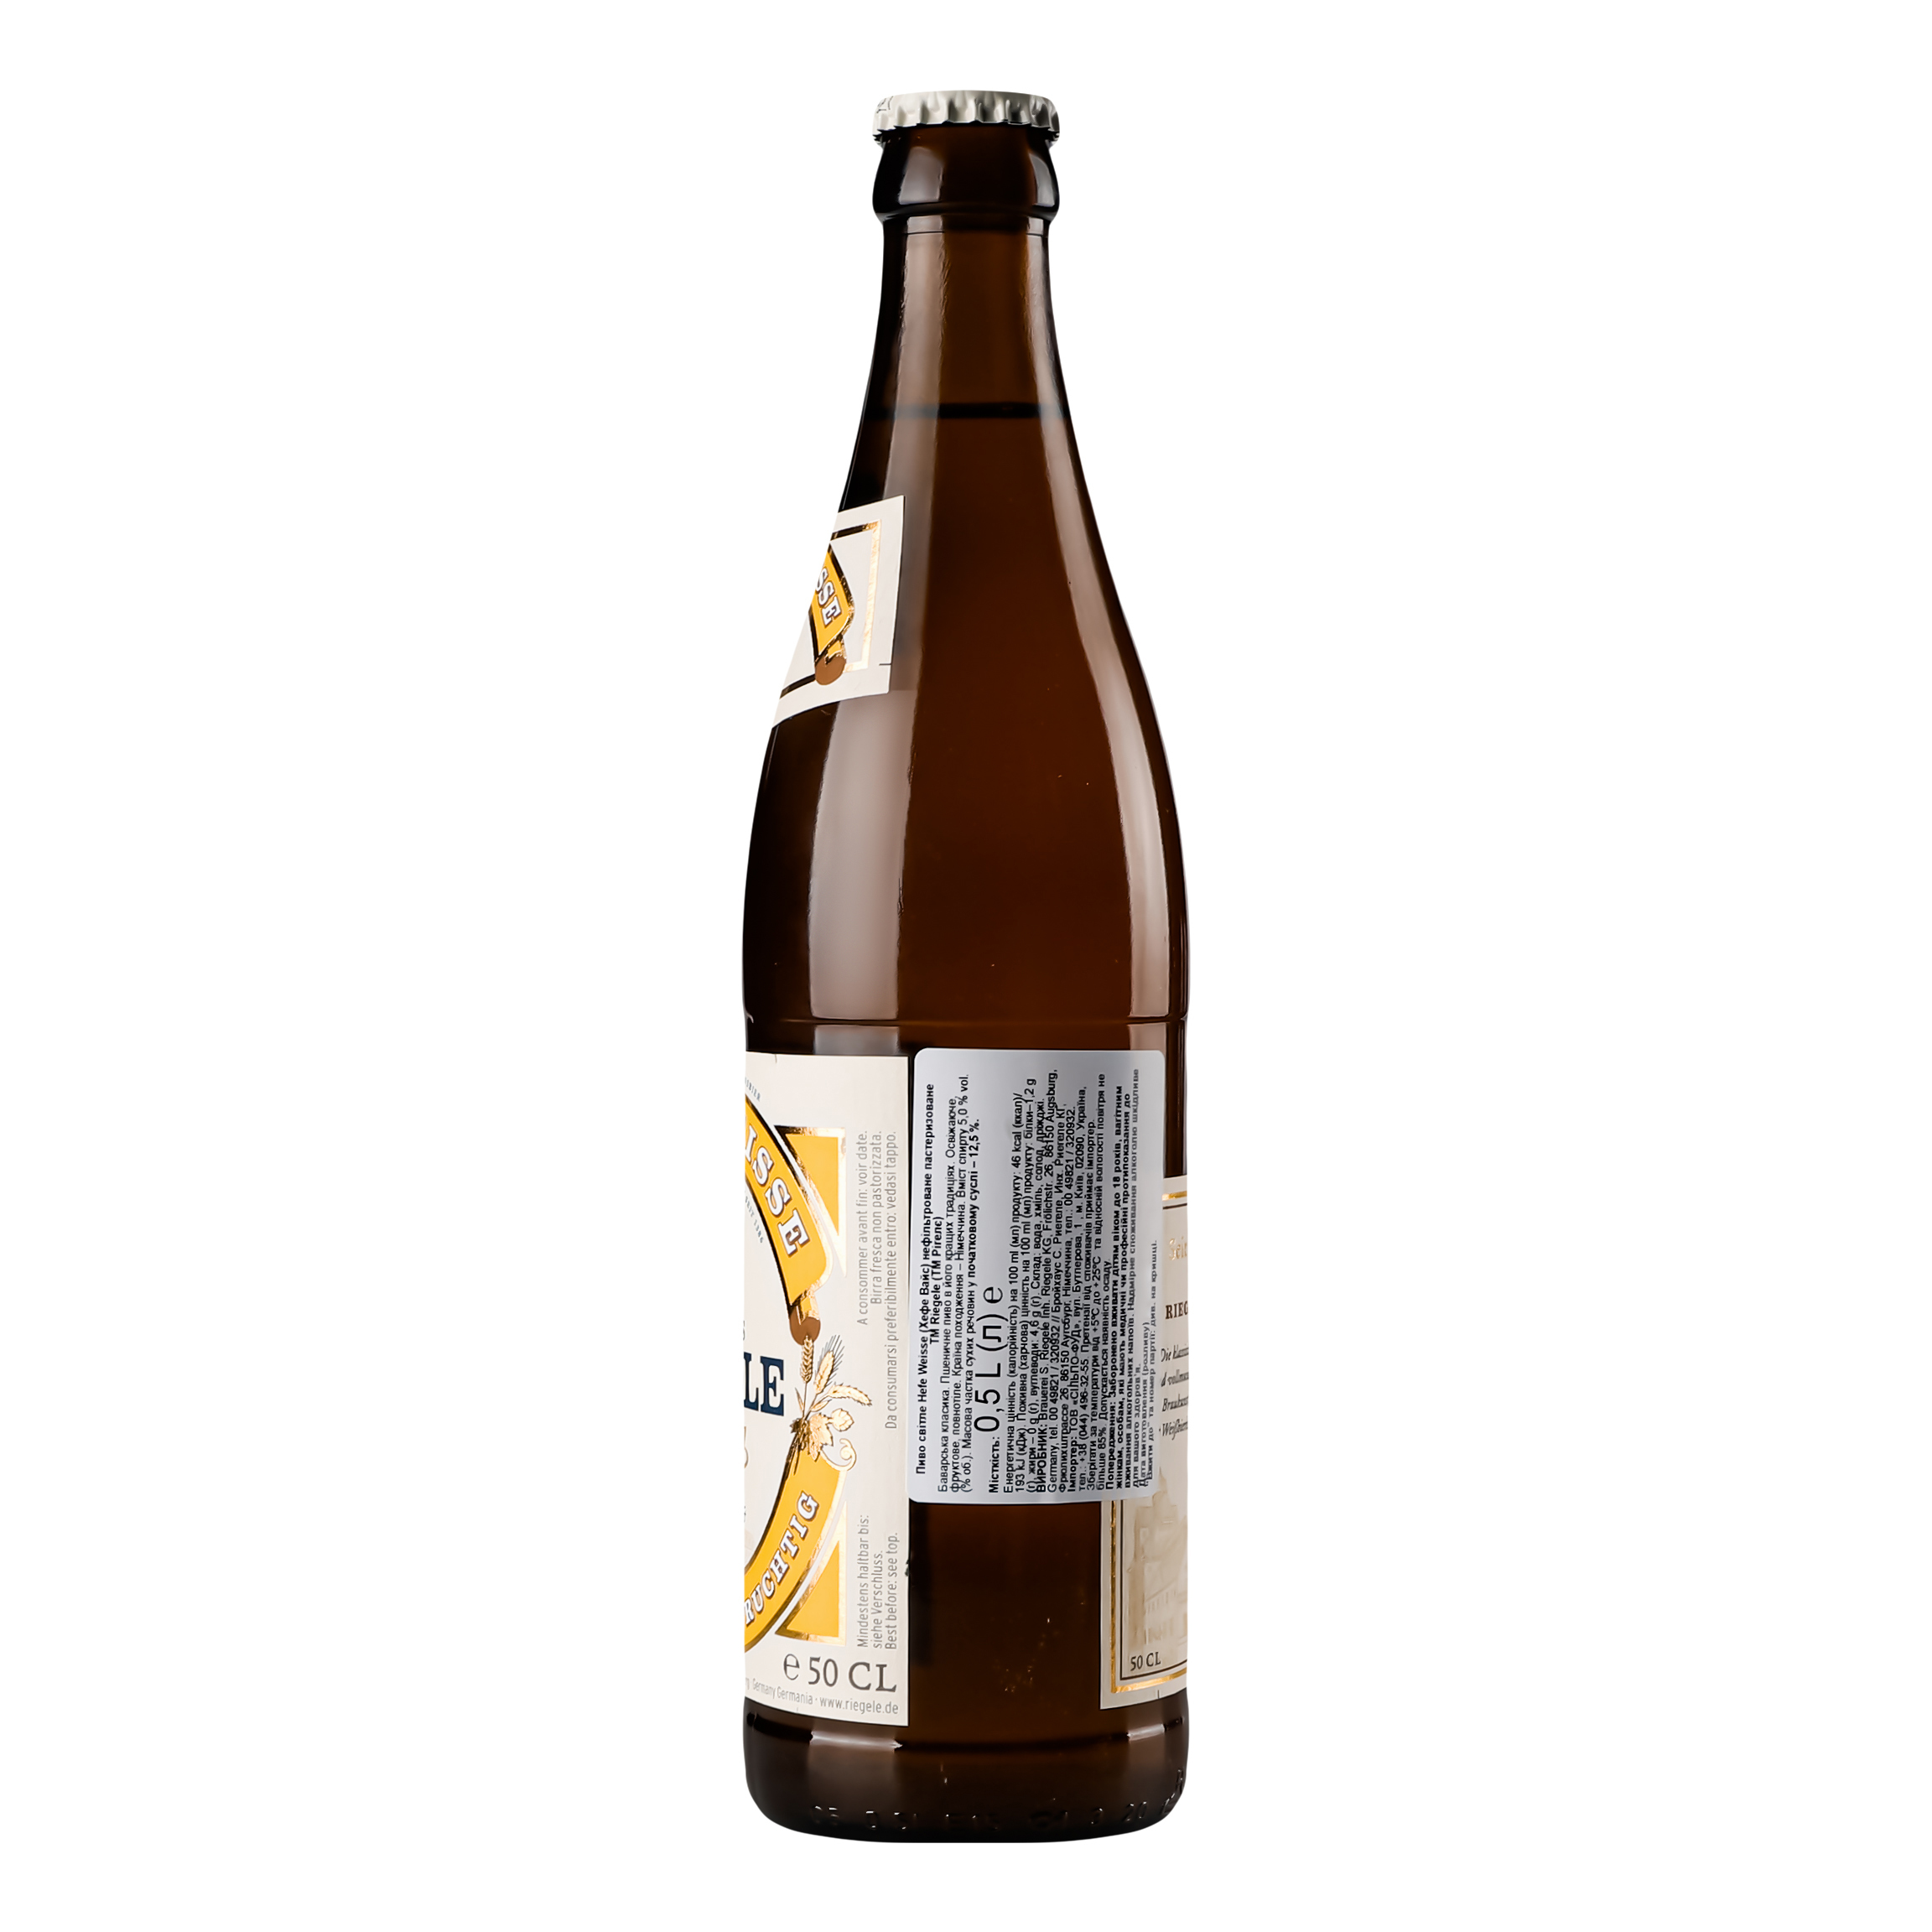 Пиво Riegele Hefe Weisse светлое нефильтрованное, 5%, 0,5 л (749207) - фото 2